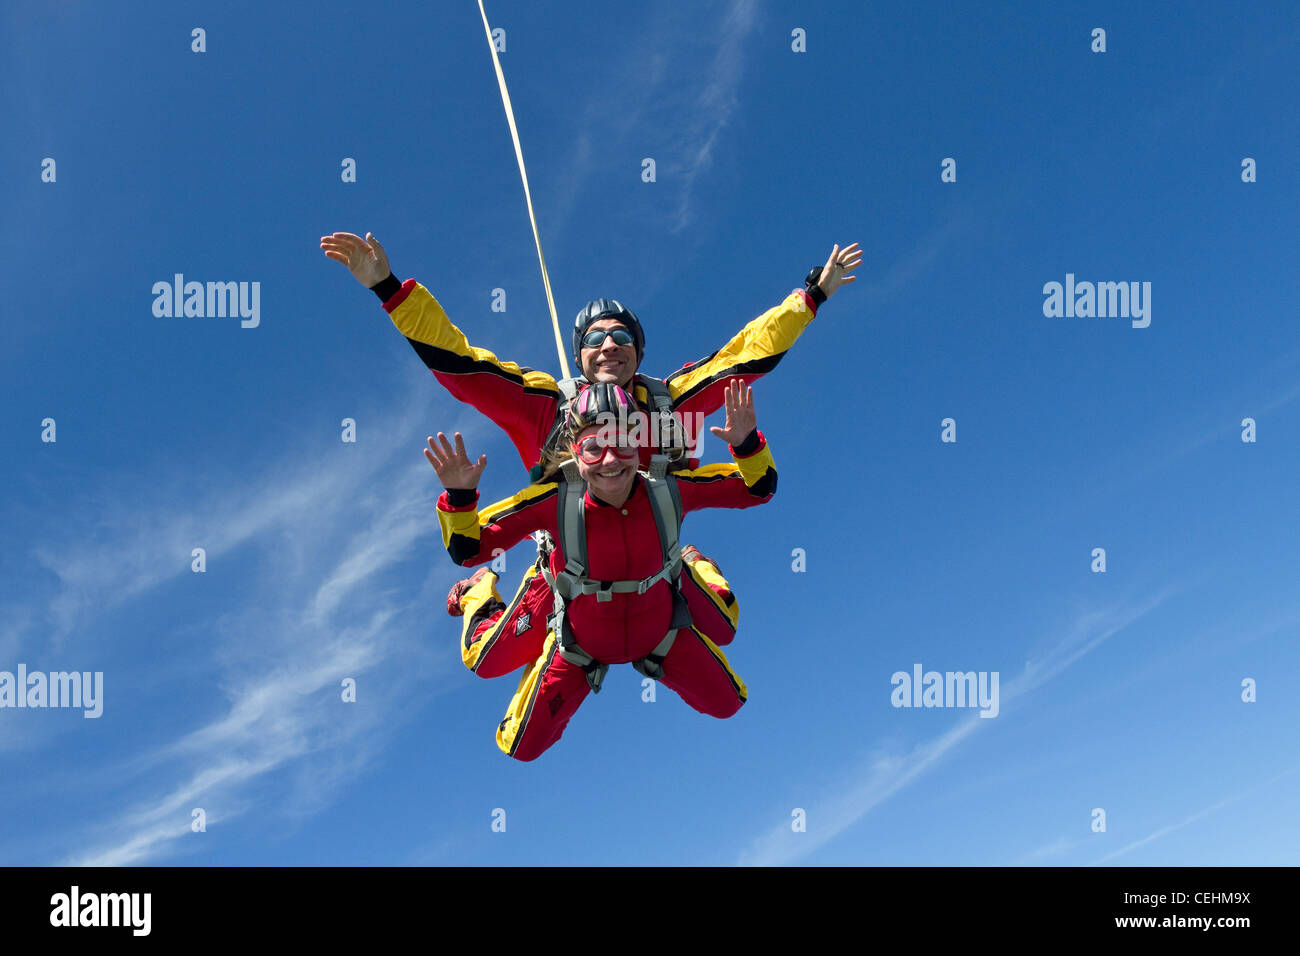 Tandem-Fallschirmspringer-paar sind in den blauen Himmel Spaß zusammen. Toll zu sehen, die Aufregung in diesem Ansturm Abenteuersport. Stockfoto